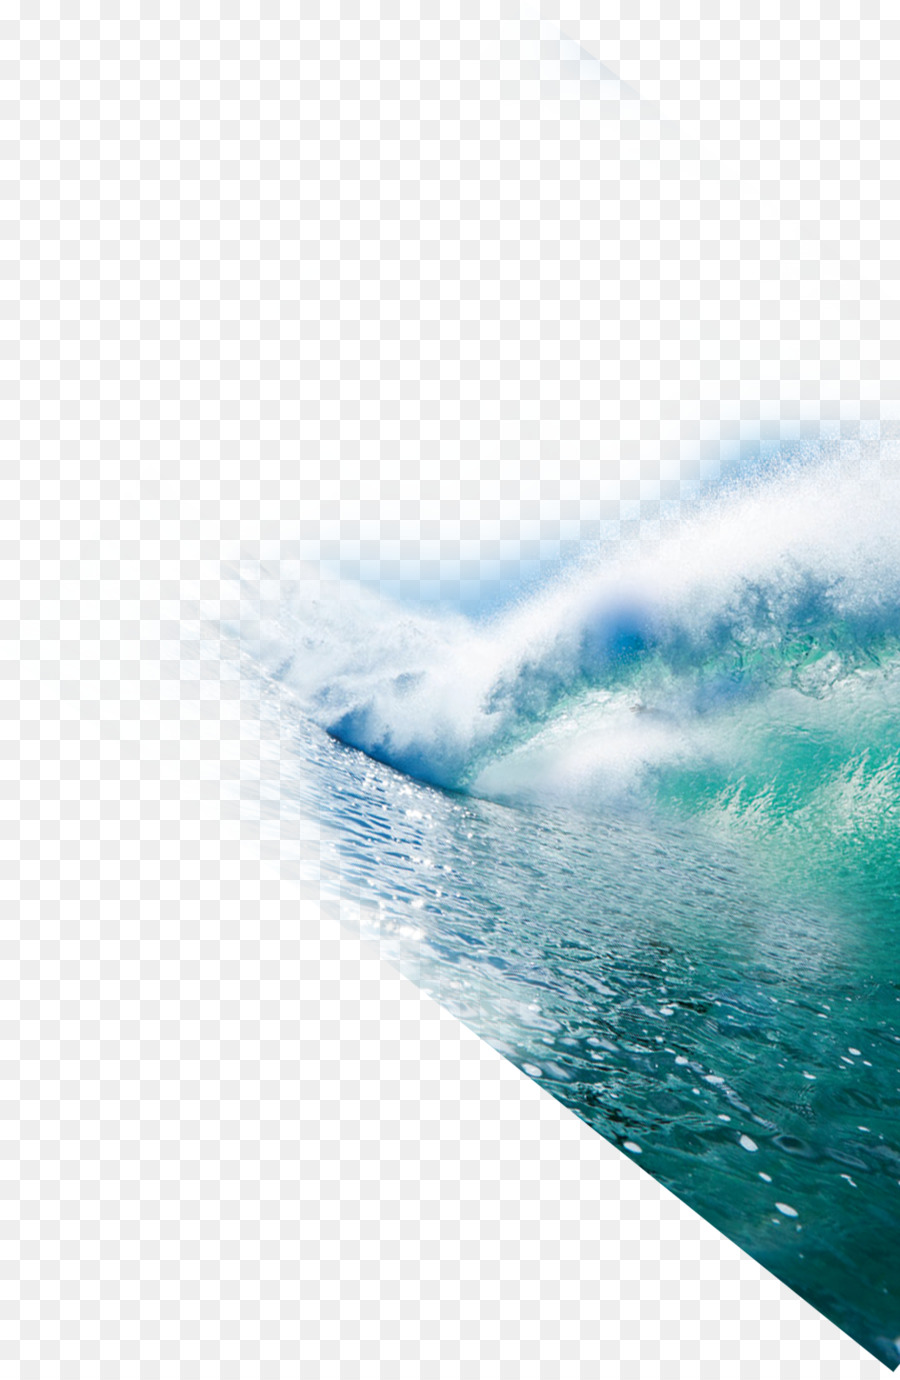 Seawater Ocean Wind wave - seawater png download - 1228*1873 - Free Transparent Seawater png Download.